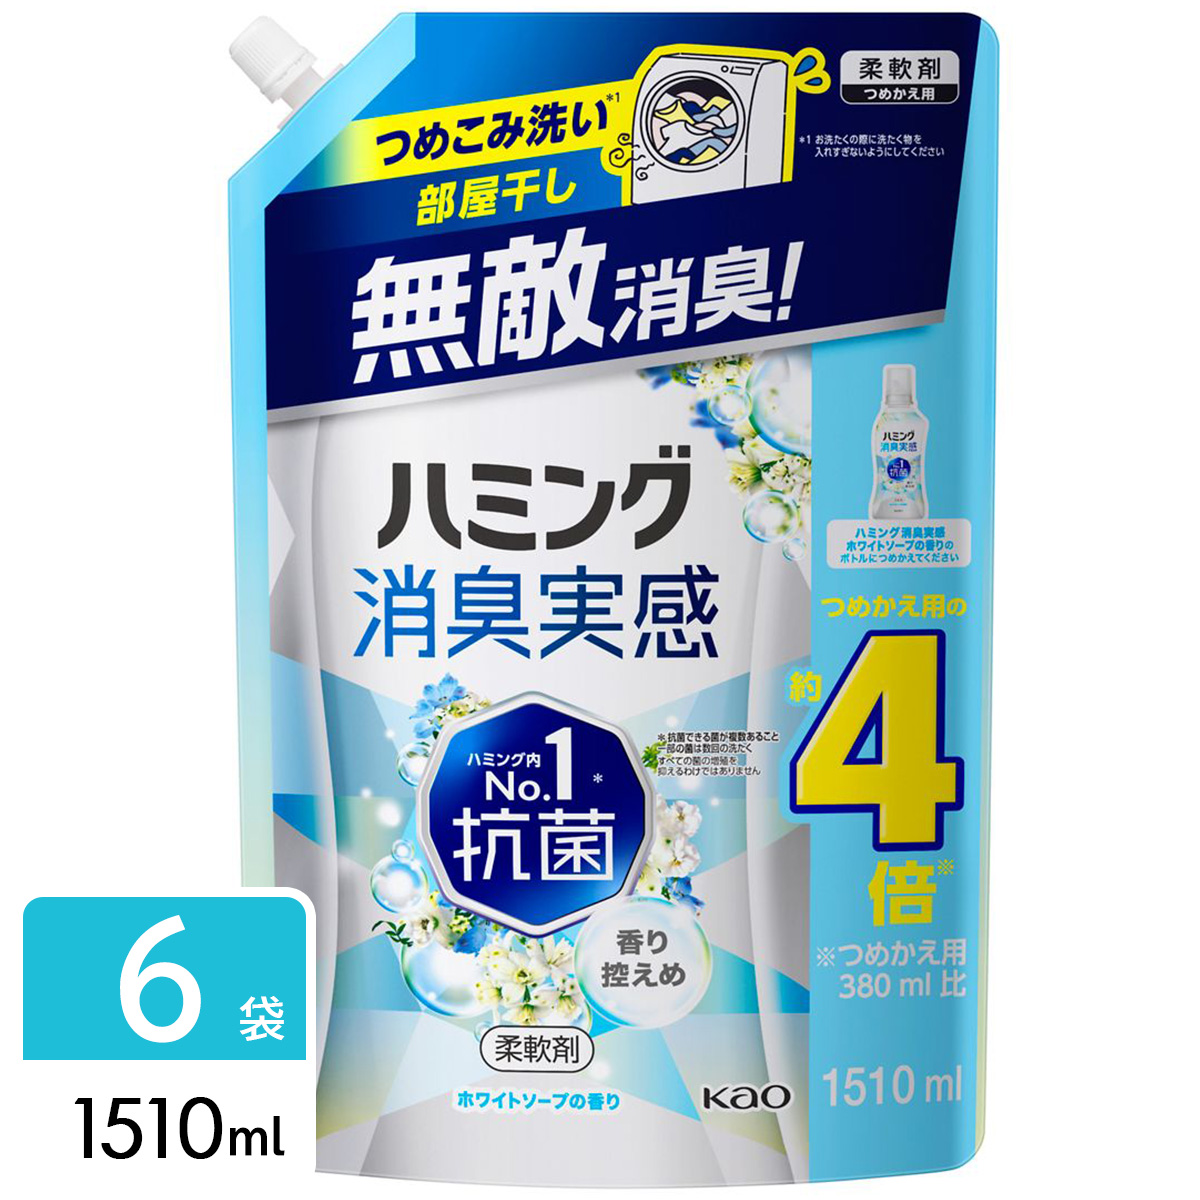 ハミング消臭実感 柔軟剤 ホワイトソープの香り 詰め替え用 1510ml×6袋